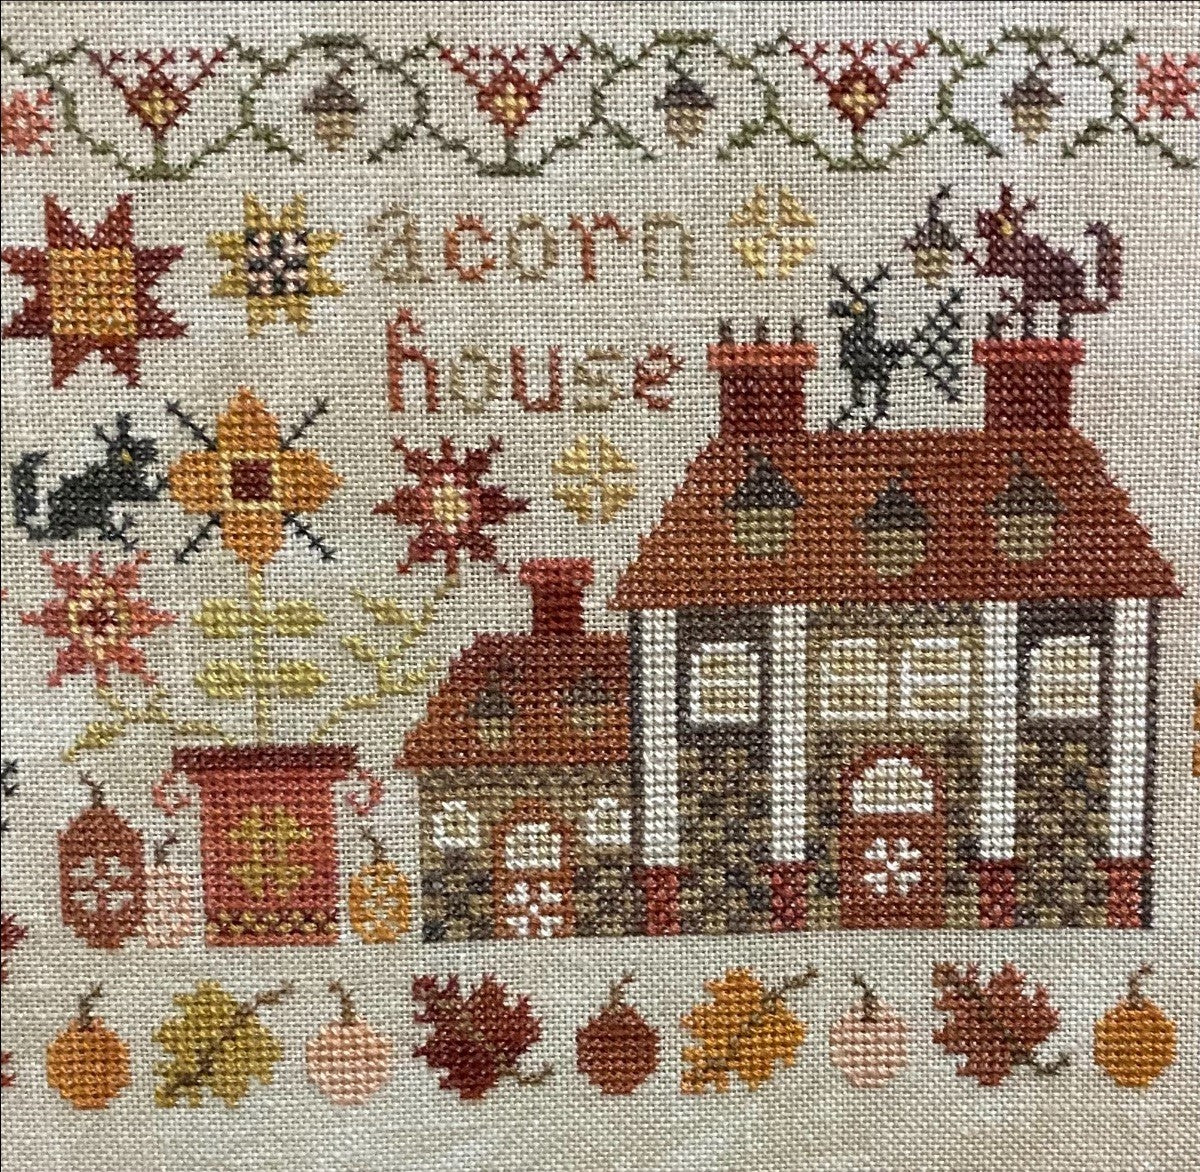 Acorn House - Cross stitch pattern by Pansy Patch